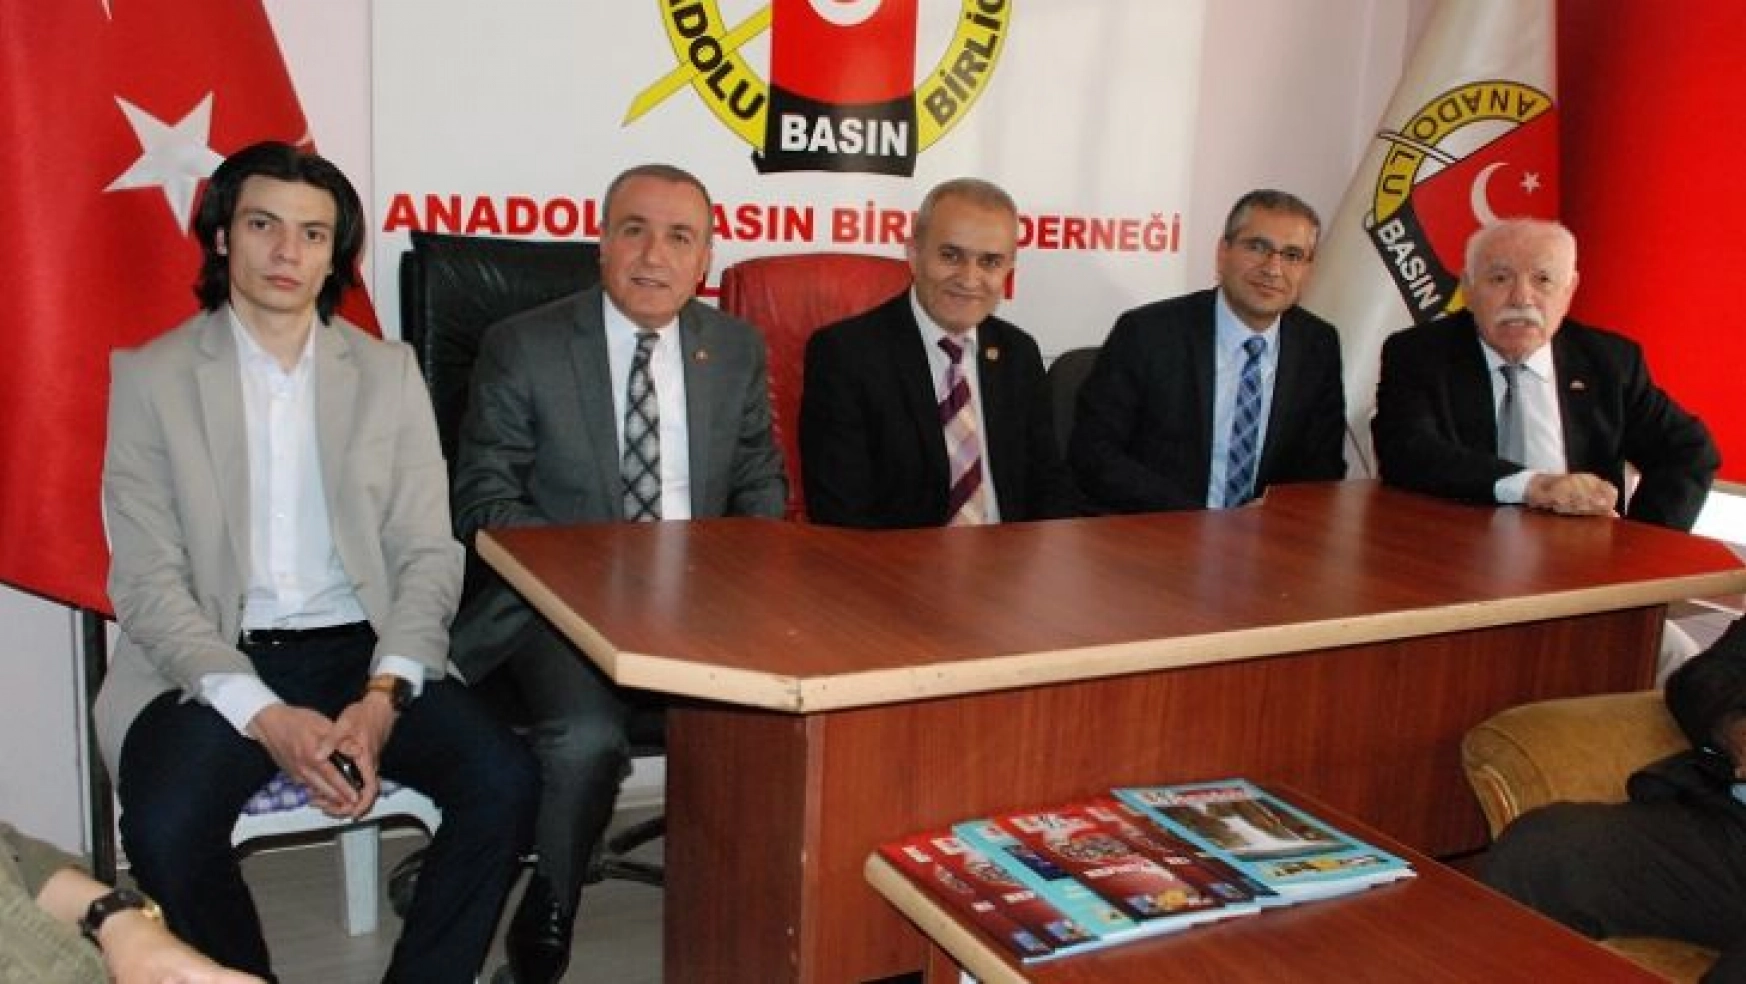 MHP Malatya Milletvekillerinden Anadolu Basın Birliği Derneğine Ziyaret